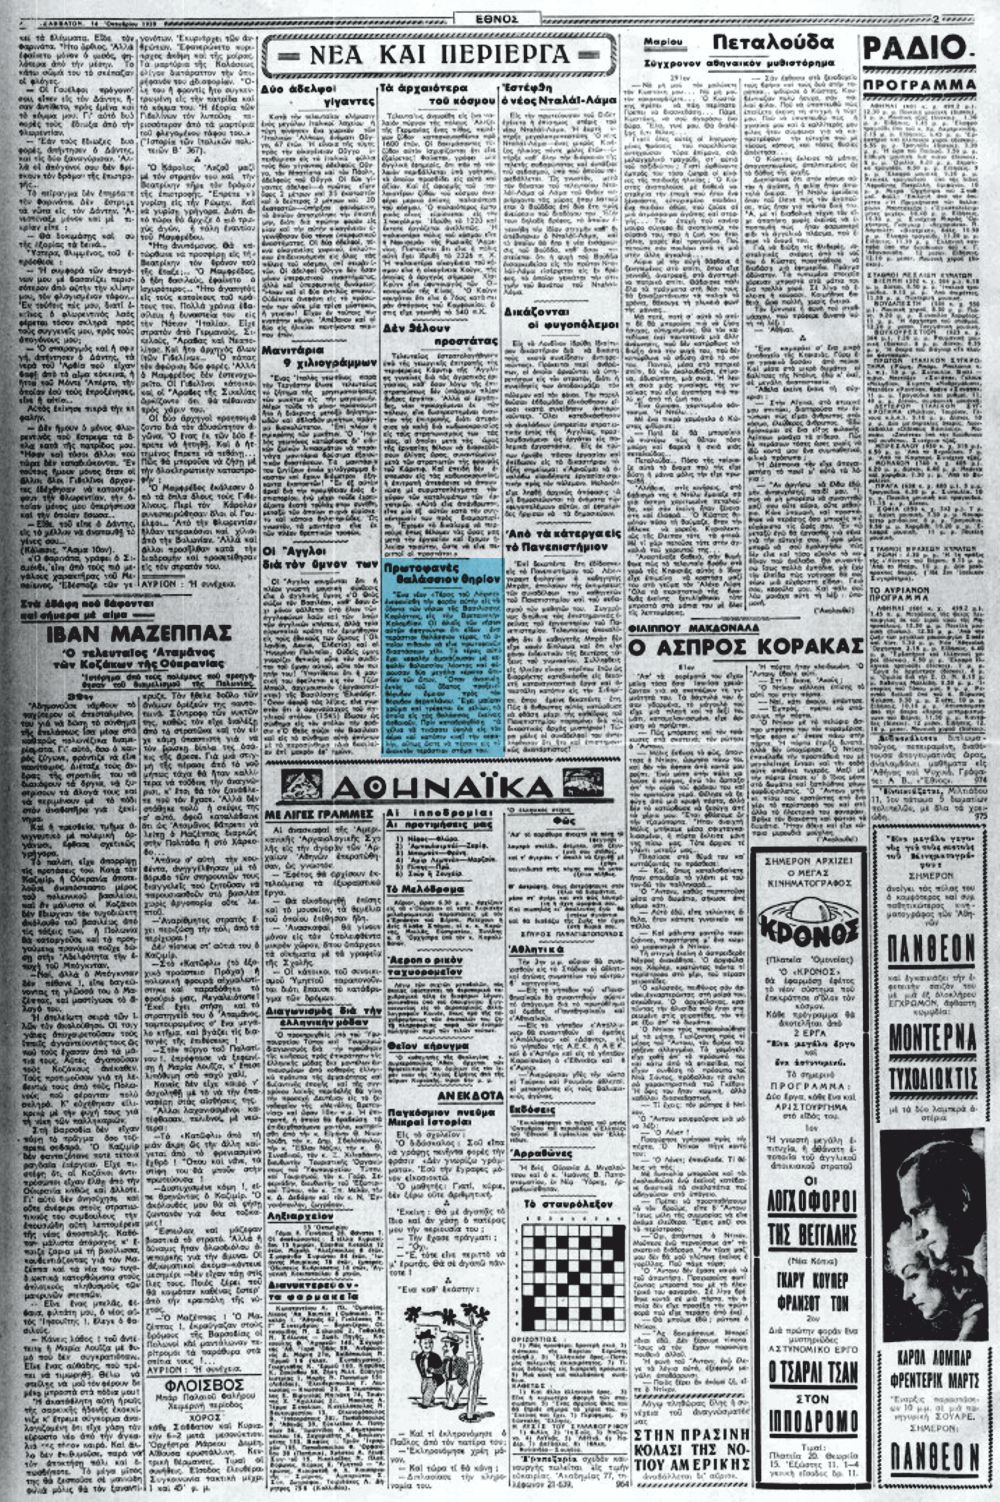 Το άρθρο, όπως δημοσιεύθηκε στην εφημερίδα "ΕΘΝΟΣ", στις 14/10/1939